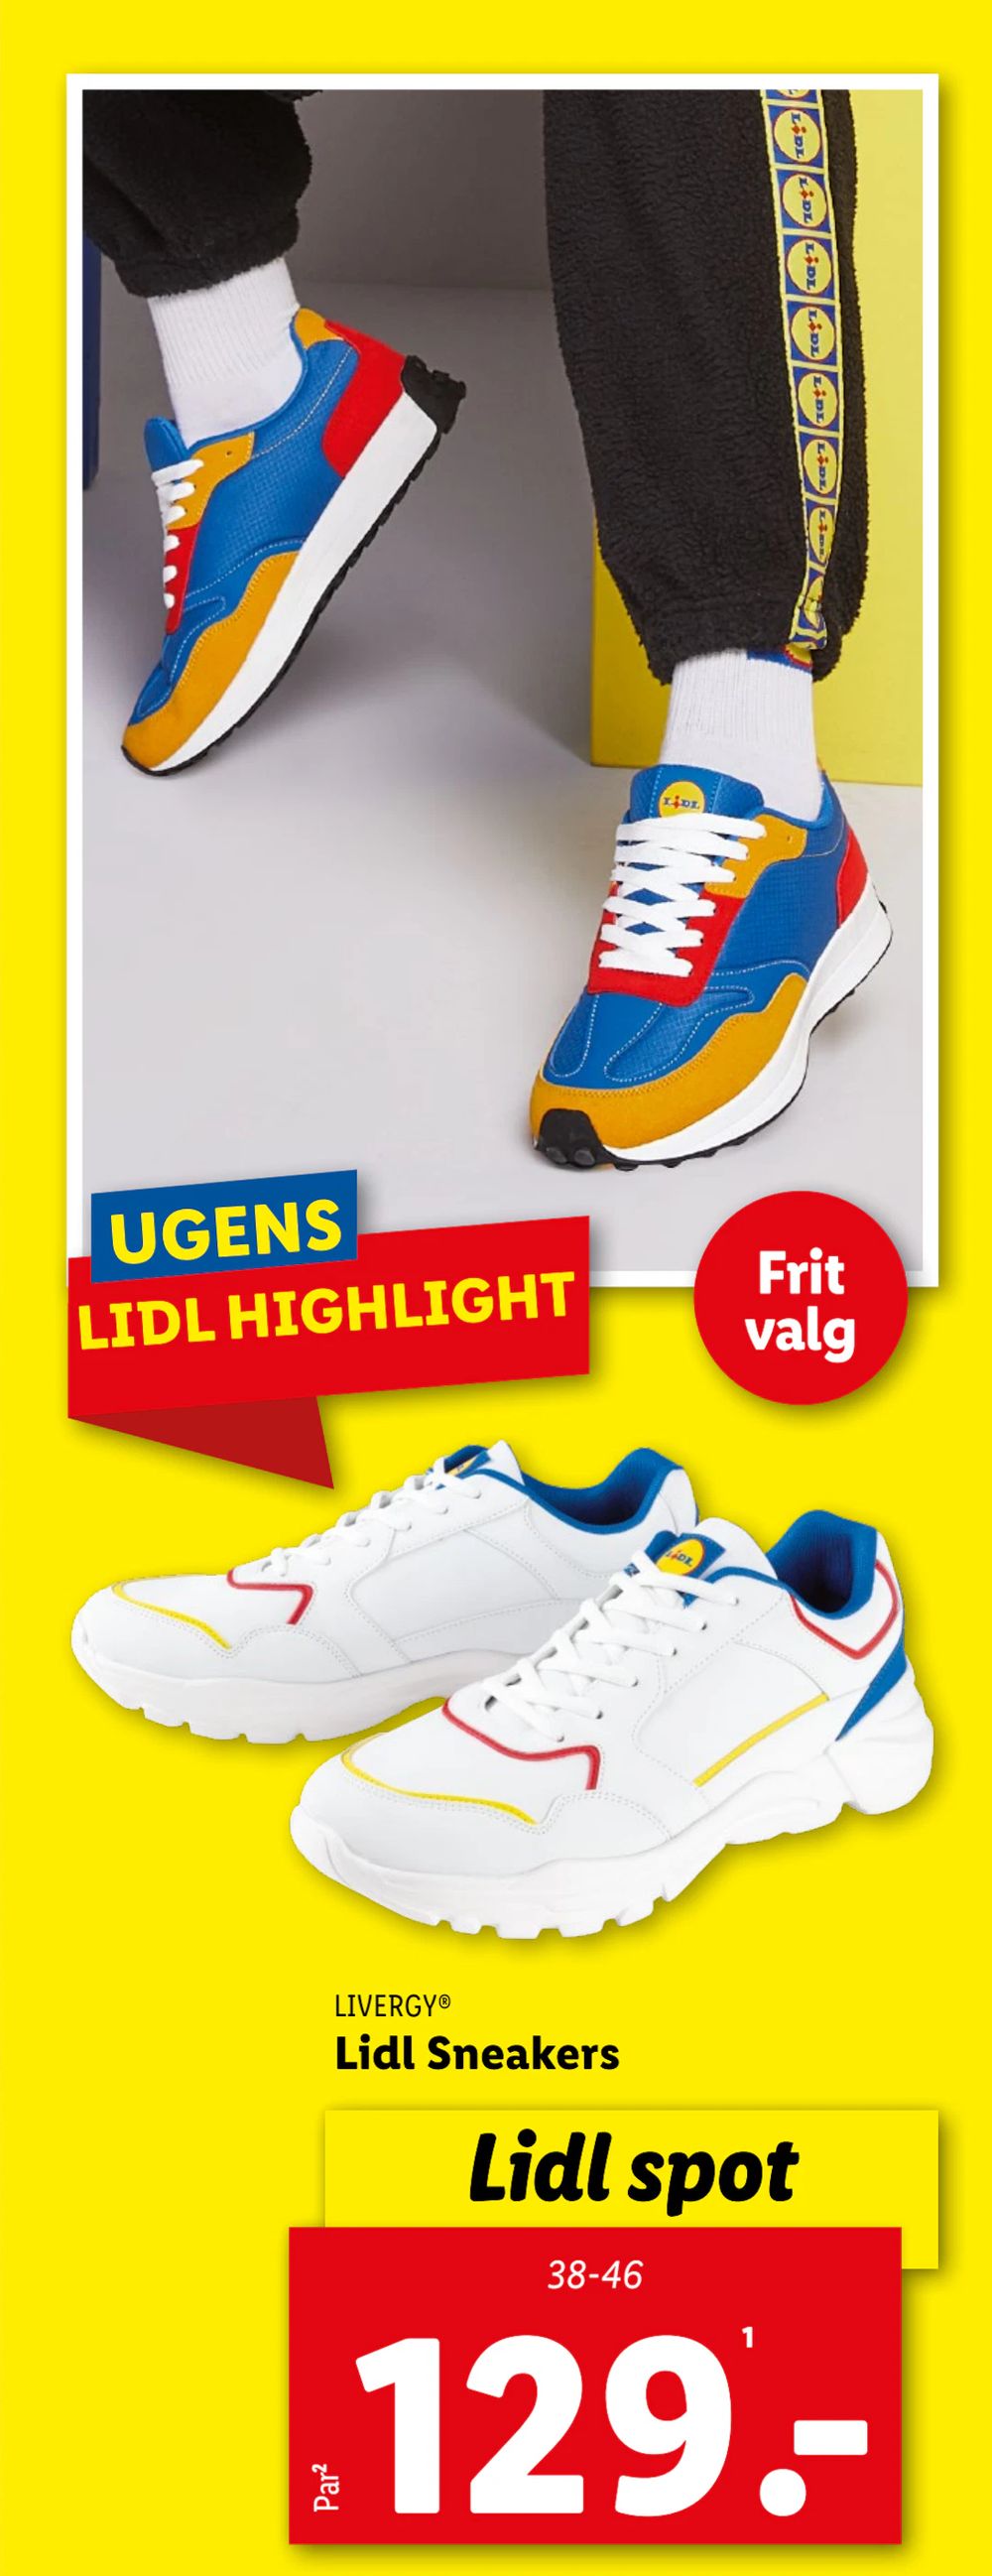 Tilbud på Lidl Sneakers fra Lidl til 129 kr.